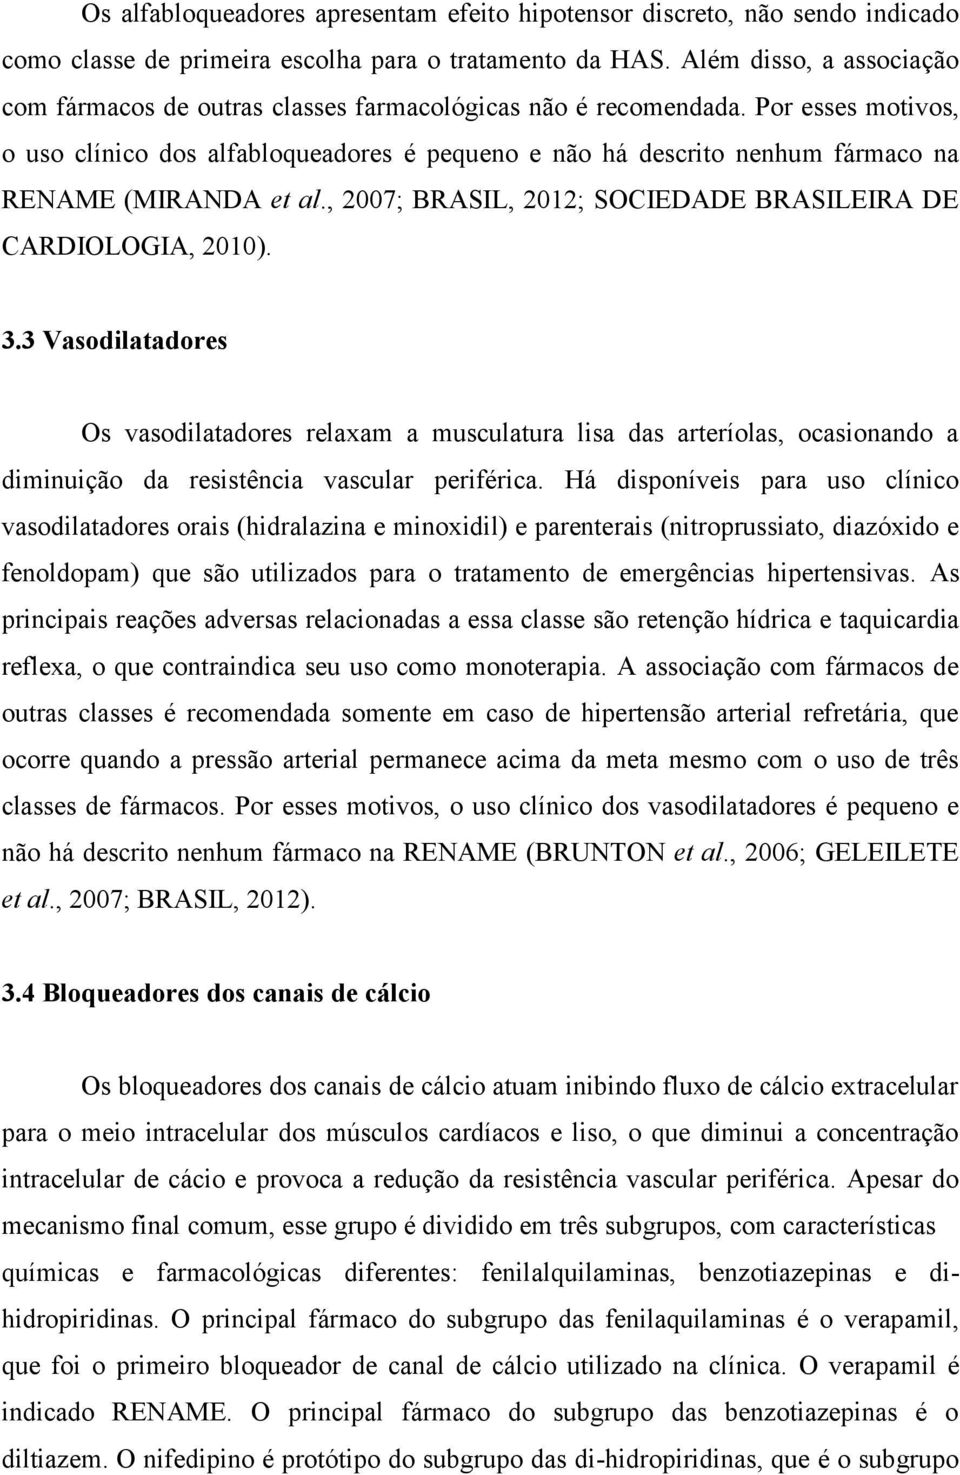 Por esses motivos, o uso clínico dos alfabloqueadores é pequeno e não há descrito nenhum fármaco na RENAME (MIRANDA et al., 2007; BRASIL, 2012; SOCIEDADE BRASILEIRA DE CARDIOLOGIA, 2010). 3.